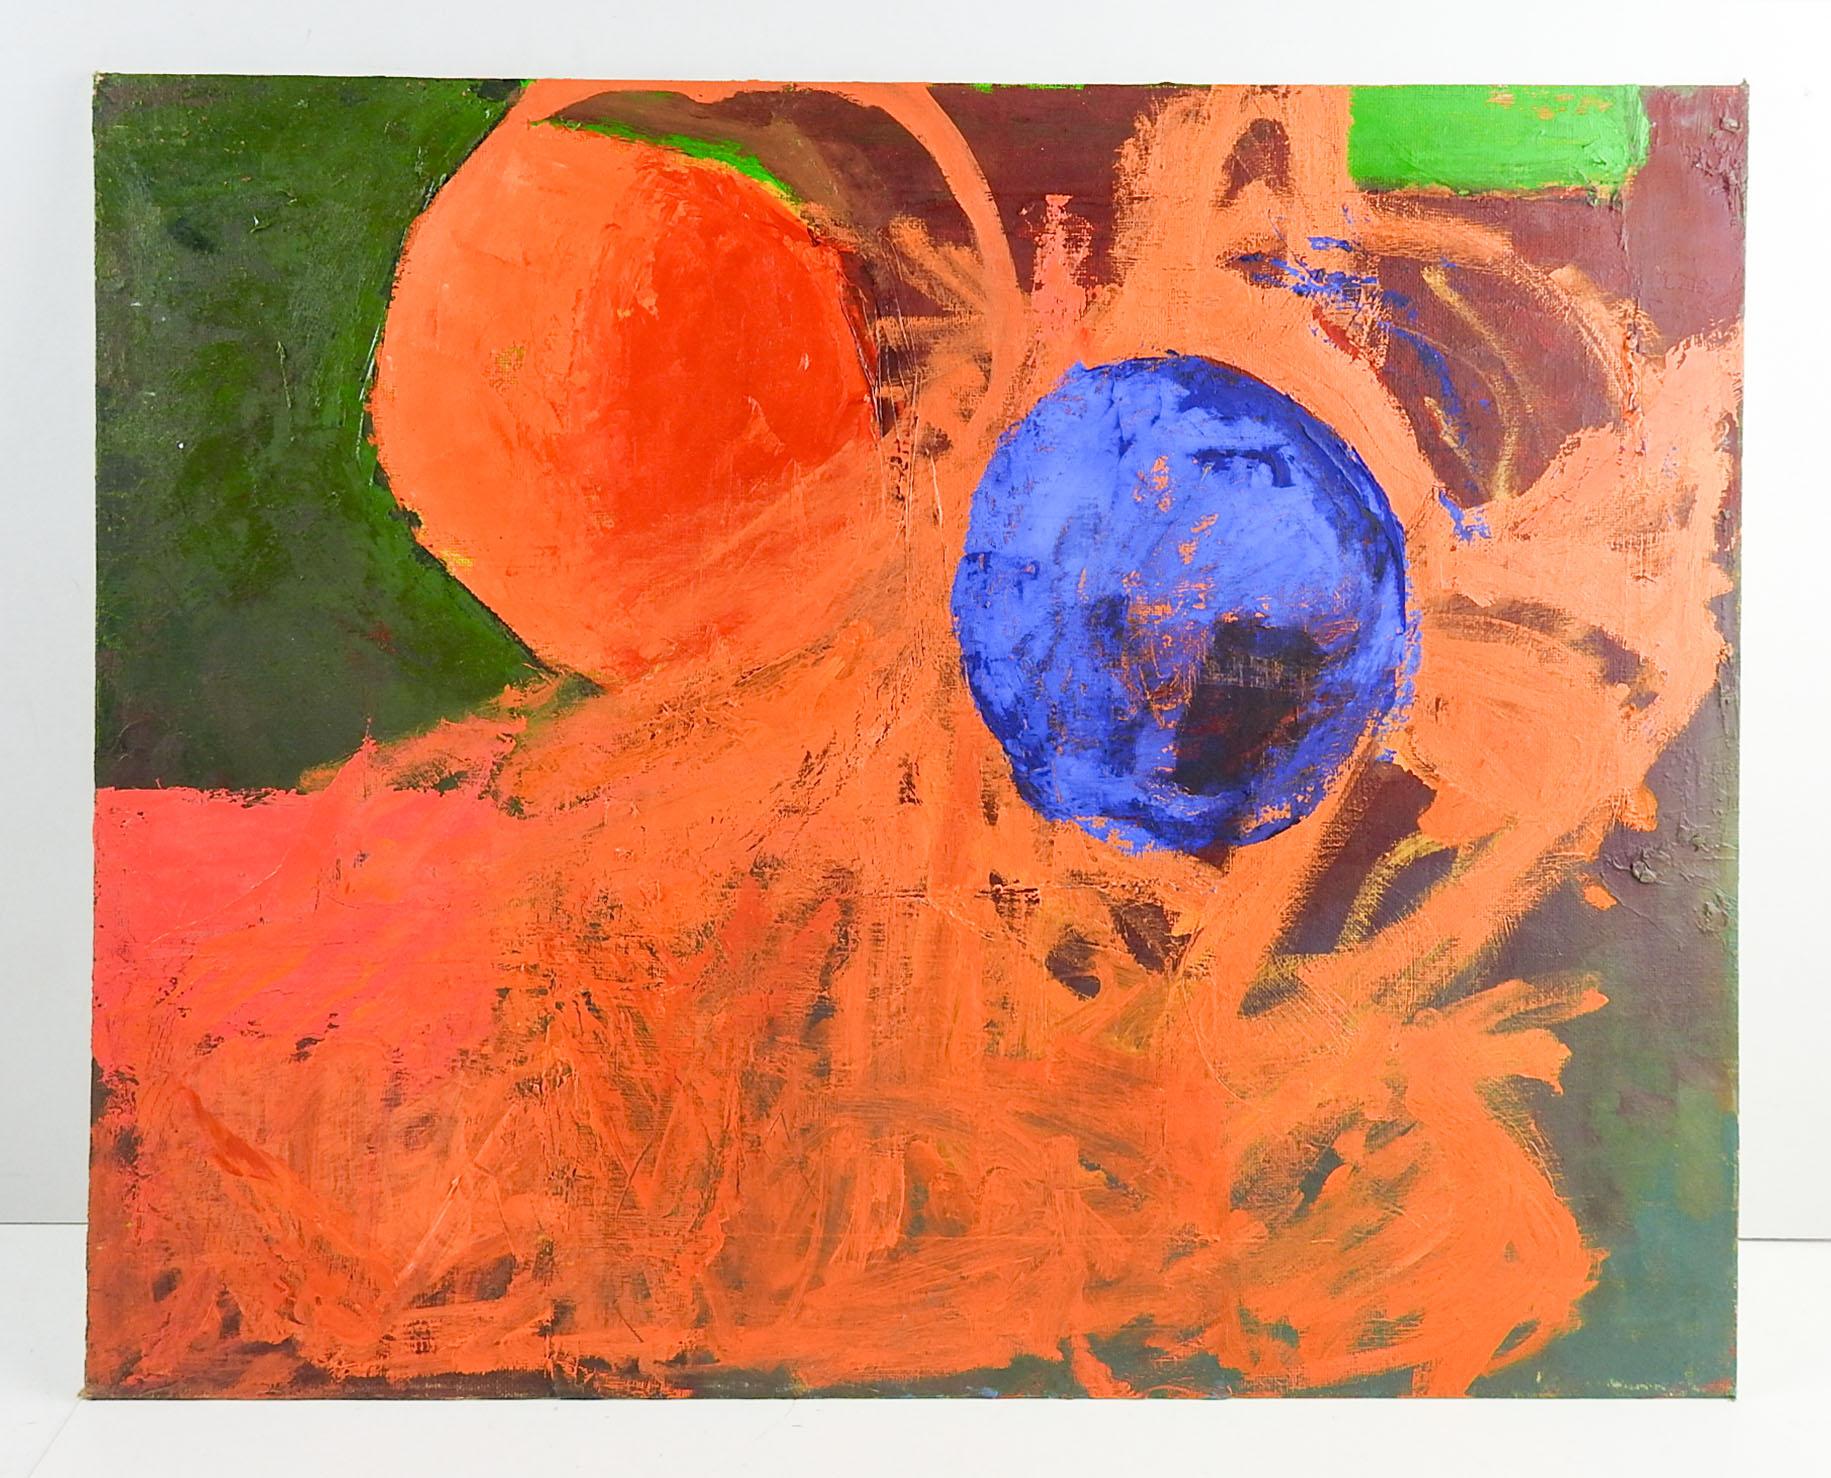 Sphères abstraites orange et bleues à l'huile sur toile de Bruce W. Clements (1936-2008) Mass. Non signé par la succession de l'artiste. Non encadré.